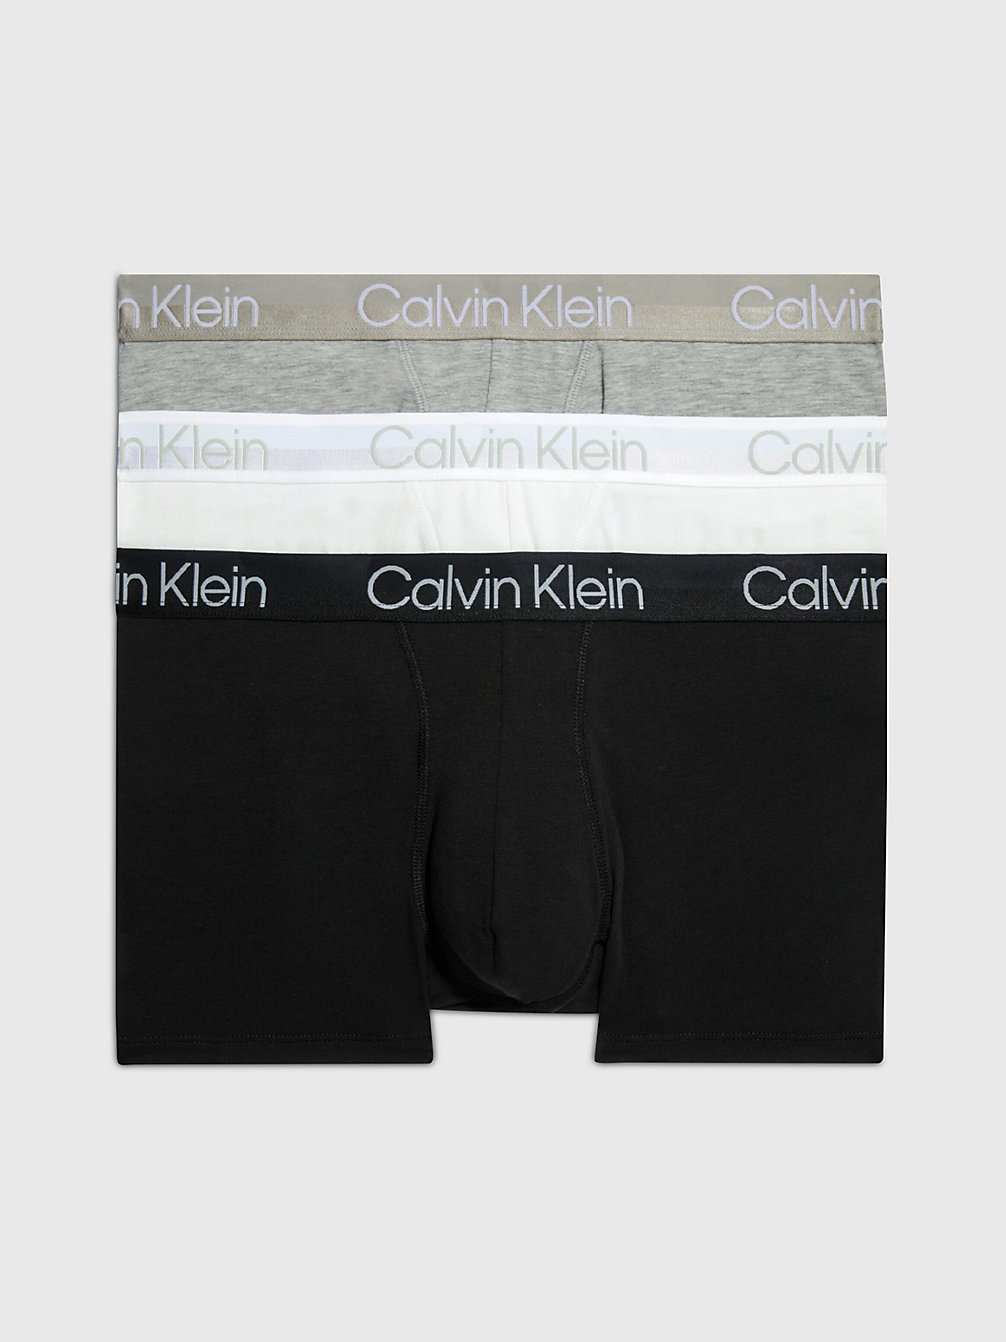 WHITE/ BLACK/ GREY HEATHER > Комплект боксеров 3 шт. - Modern Structure > undefined женщины - Calvin Klein